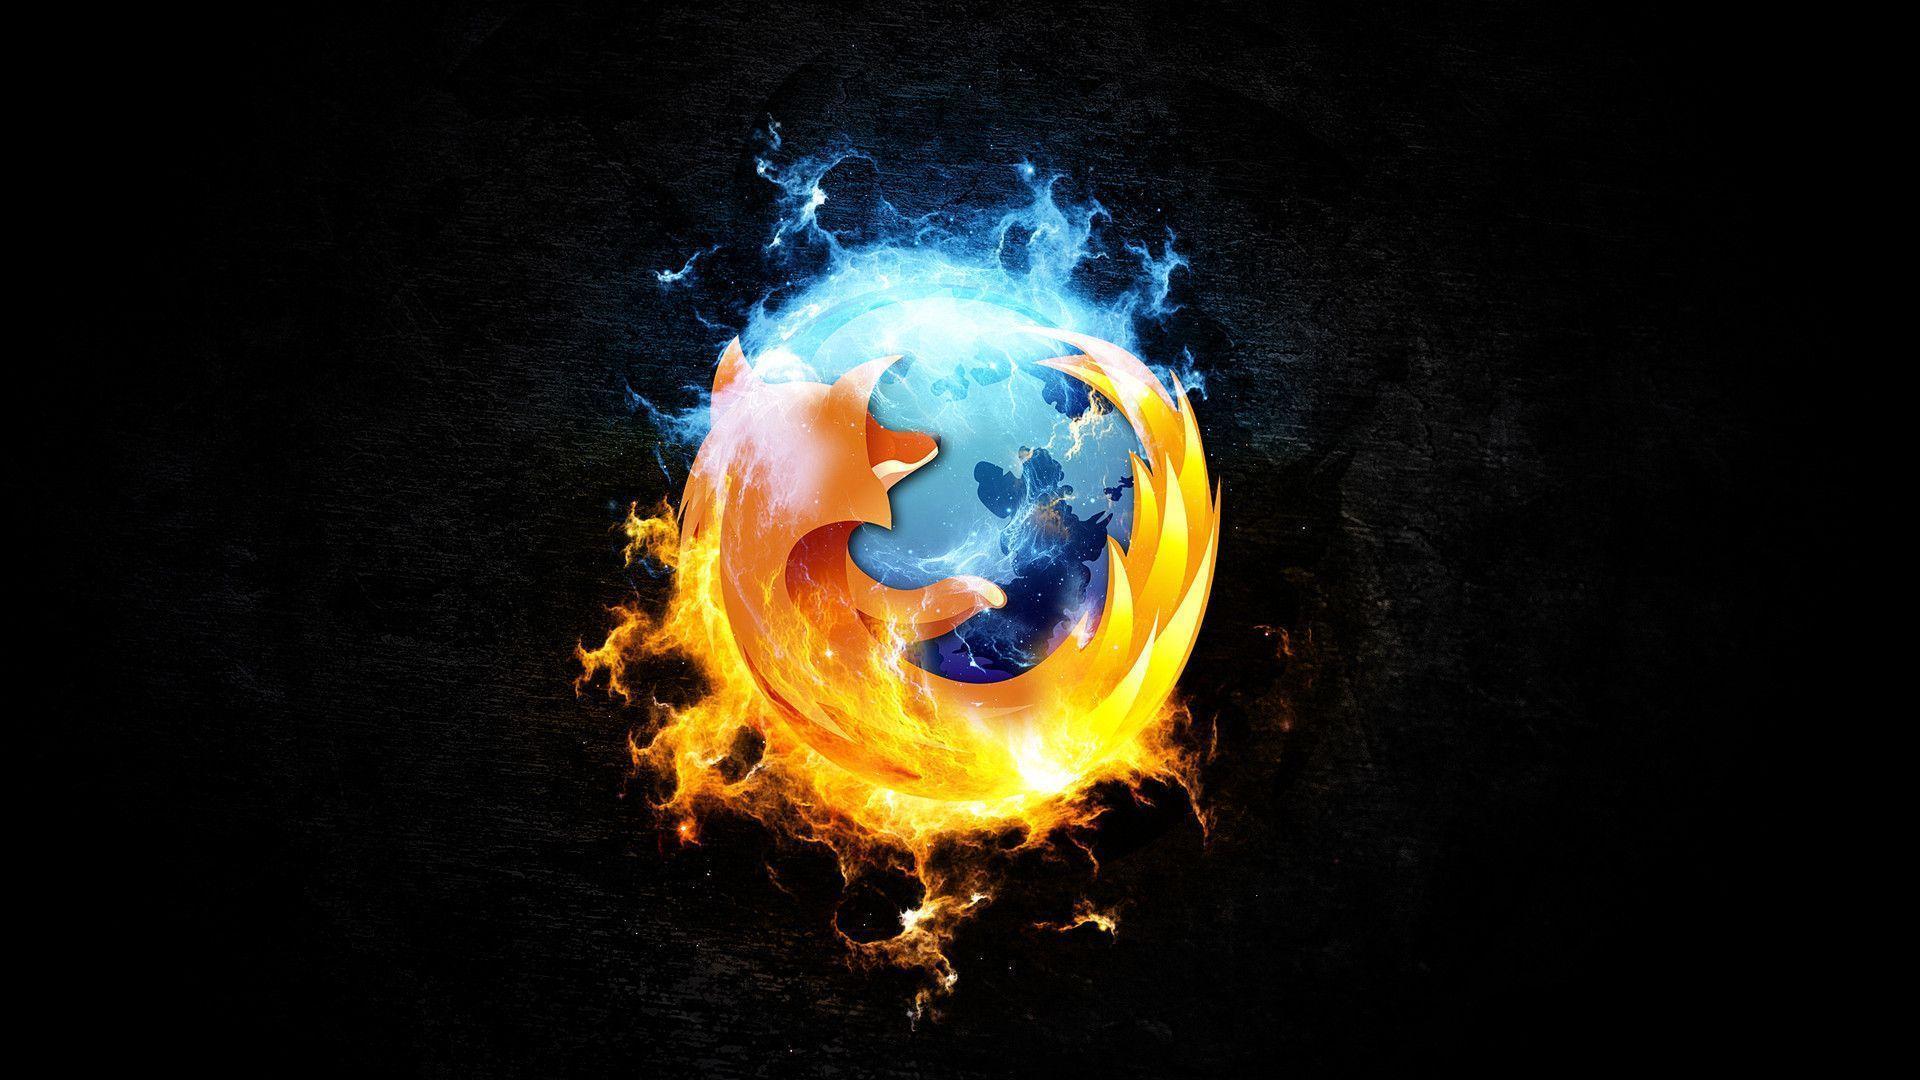 Mozilla Firefox Background Desktop Wallpaper. awshdwallpaper